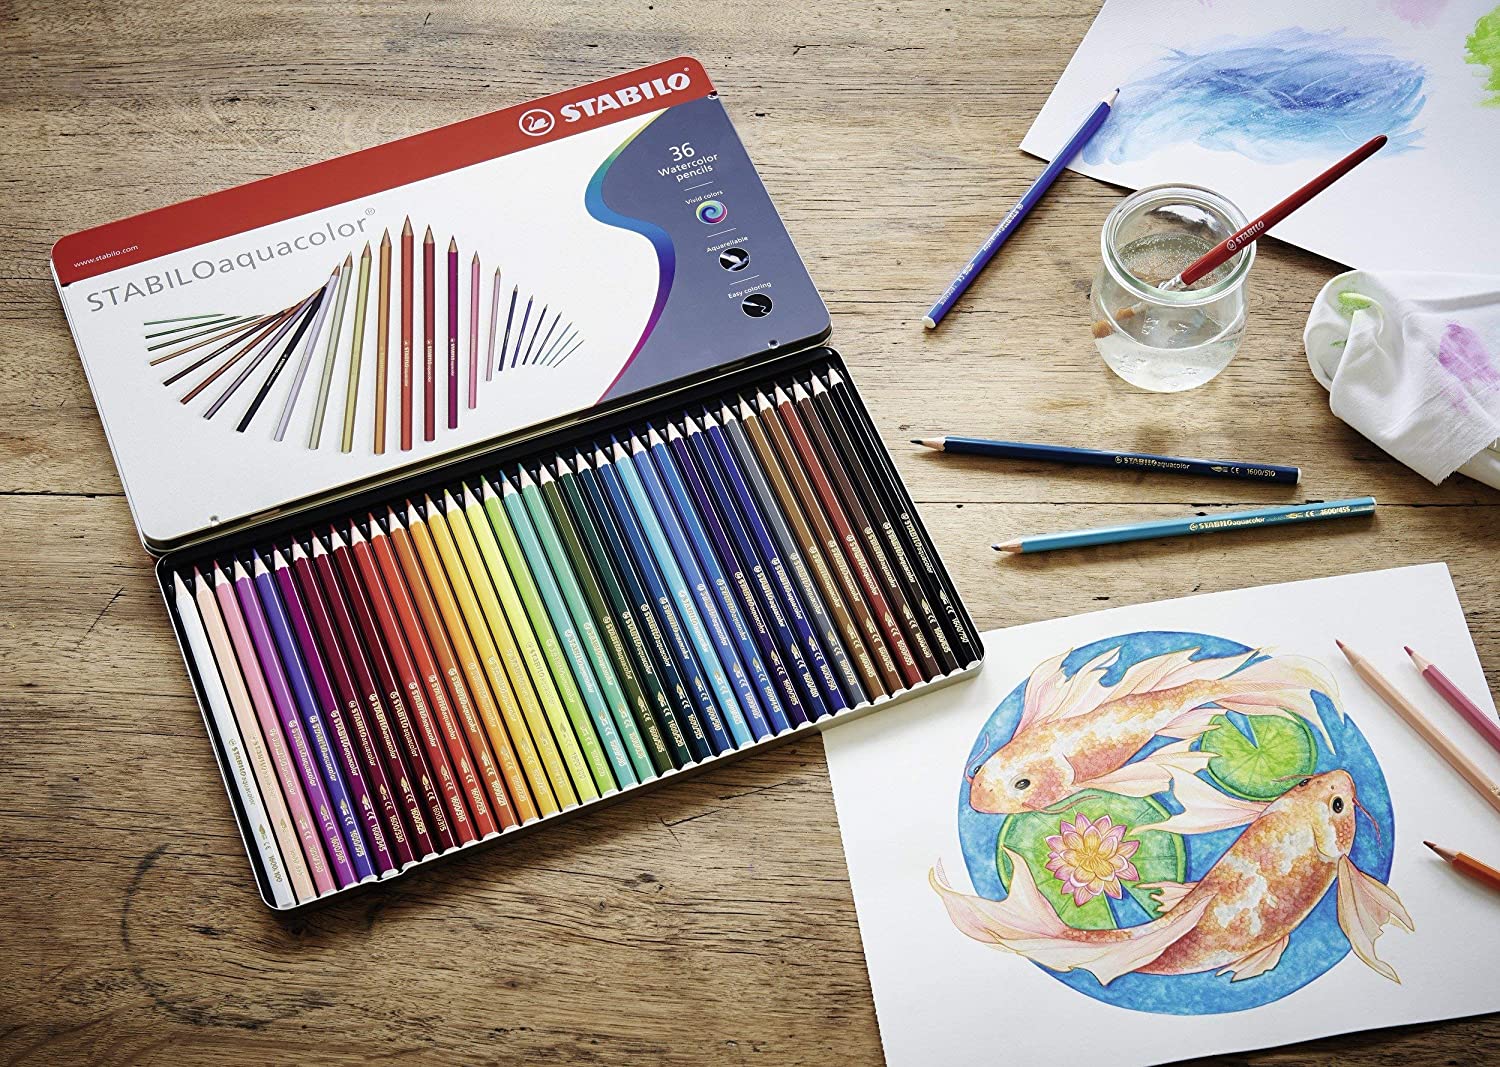 水彩色鉛筆は水彩画のようなタッチを表現できる